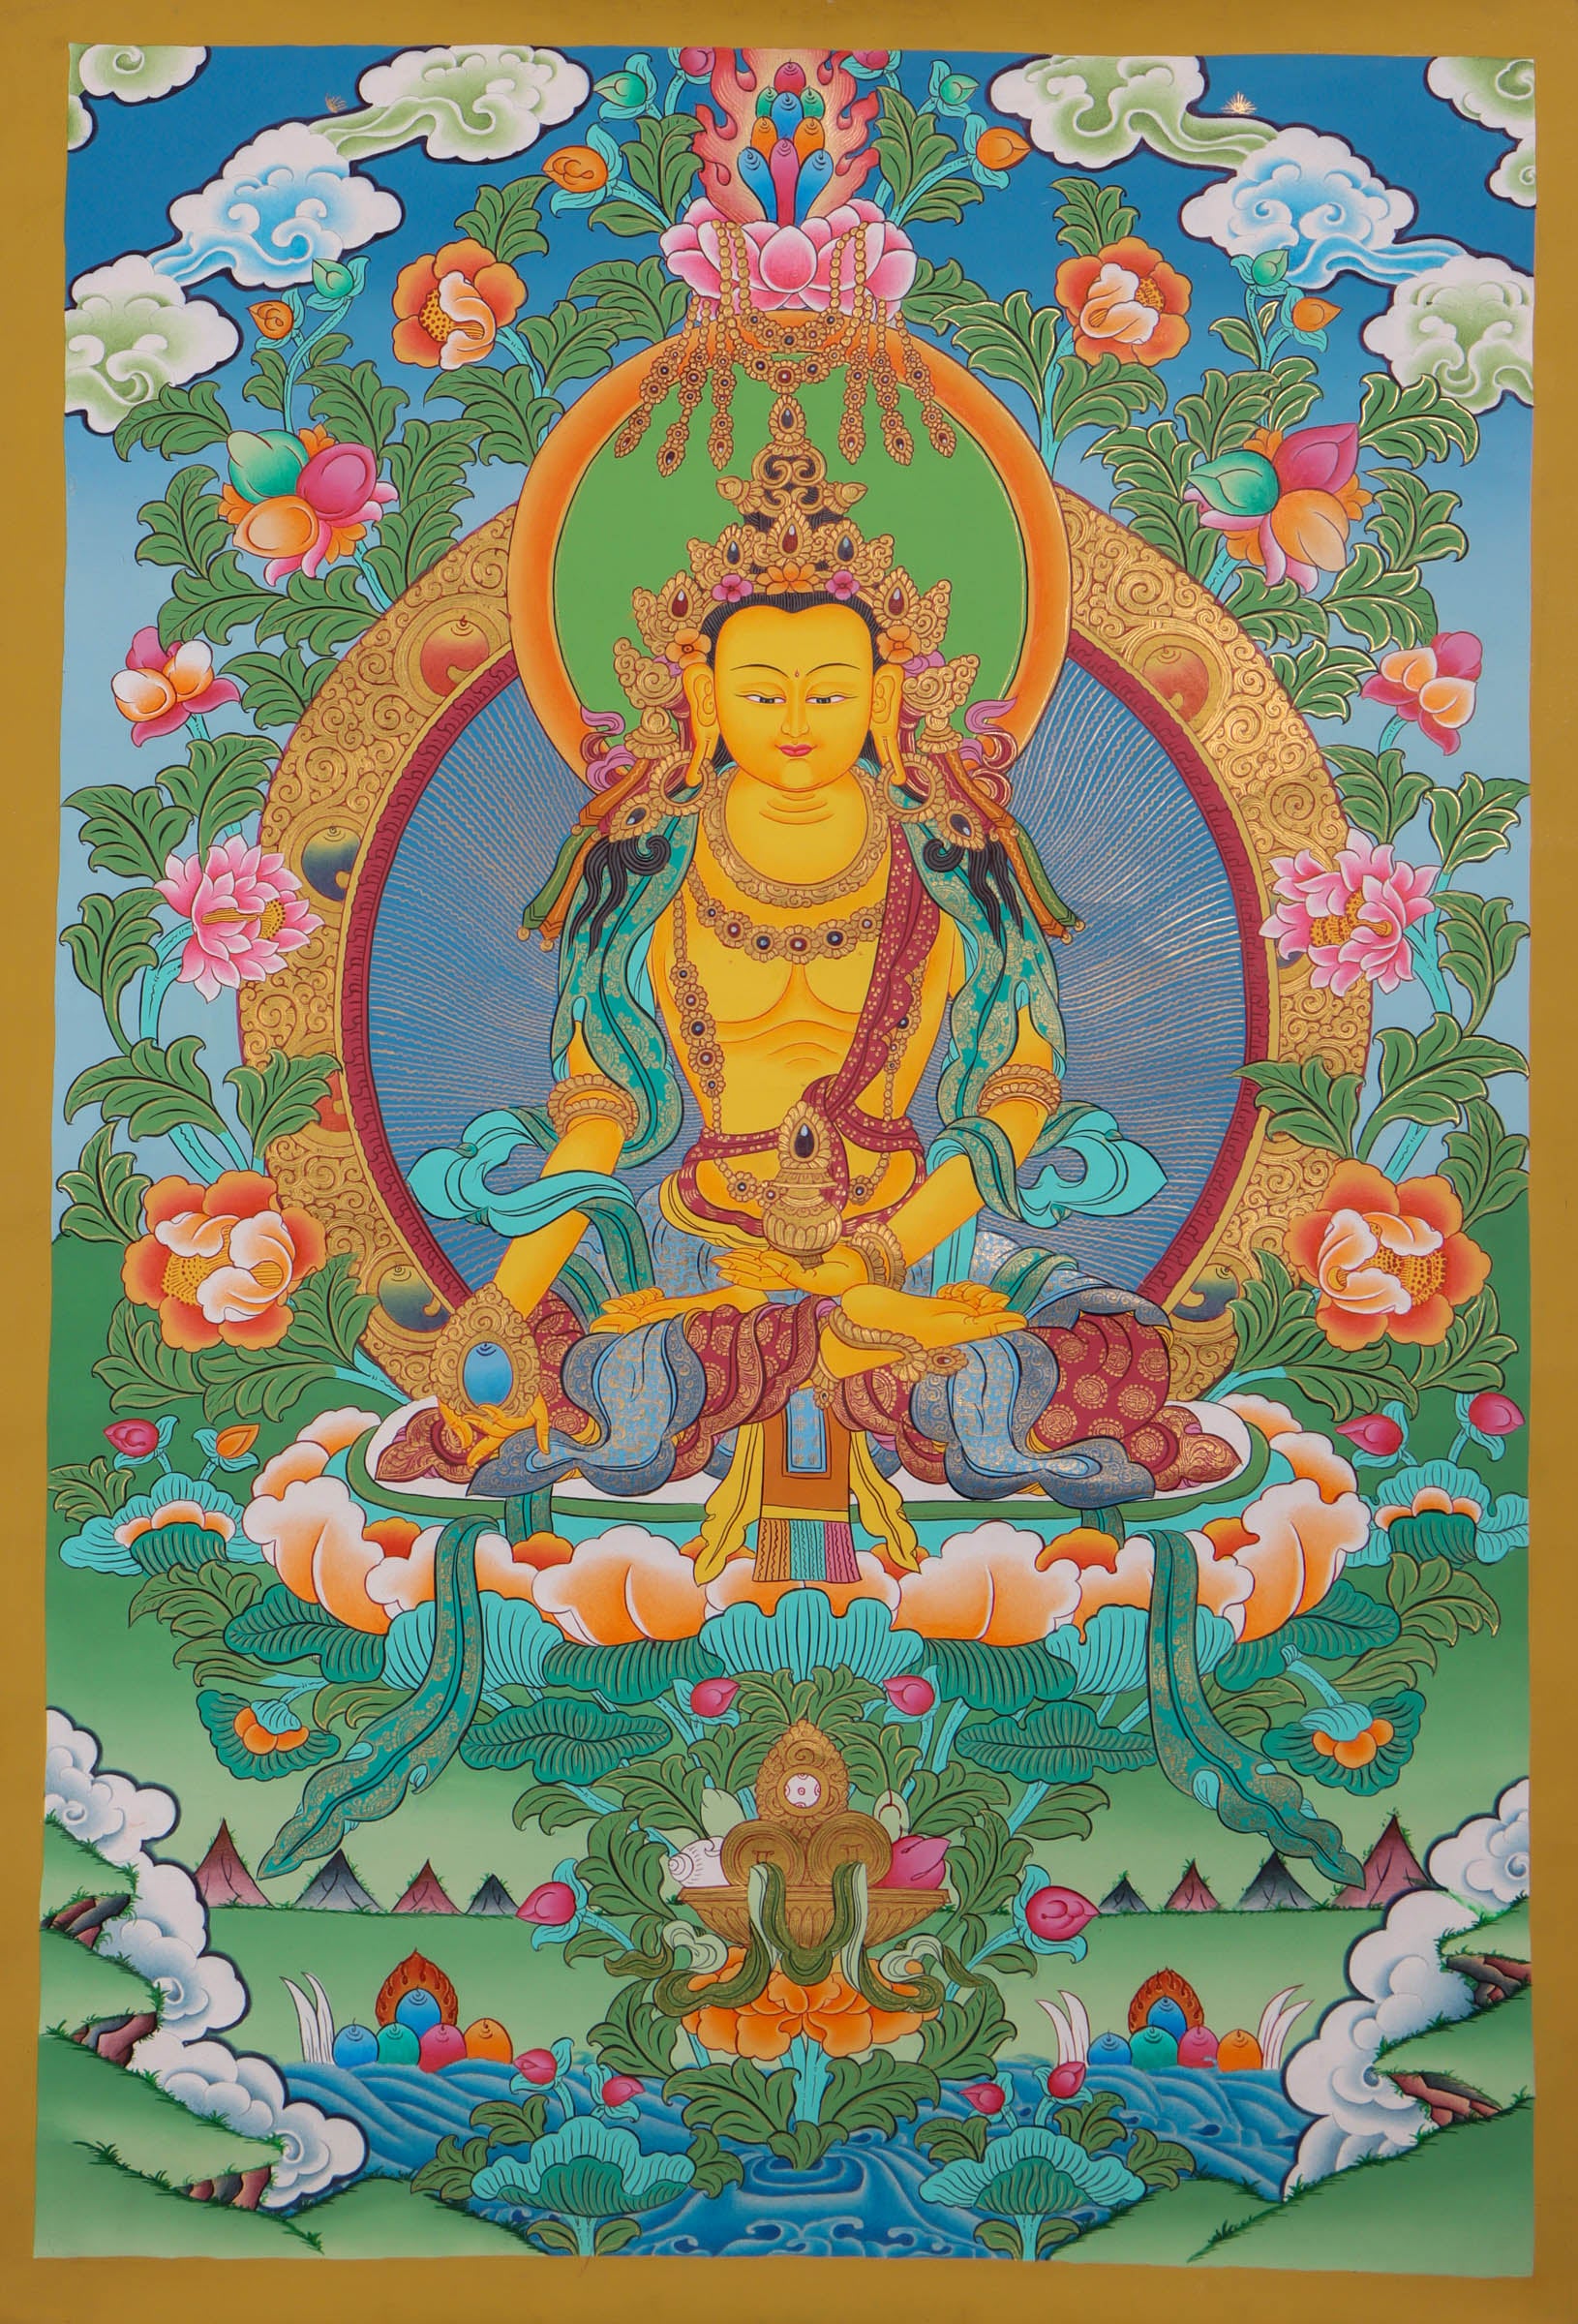 Ratnasambhava Newari Buddha - Hand painted by skillful artisan - Lucky Thanka